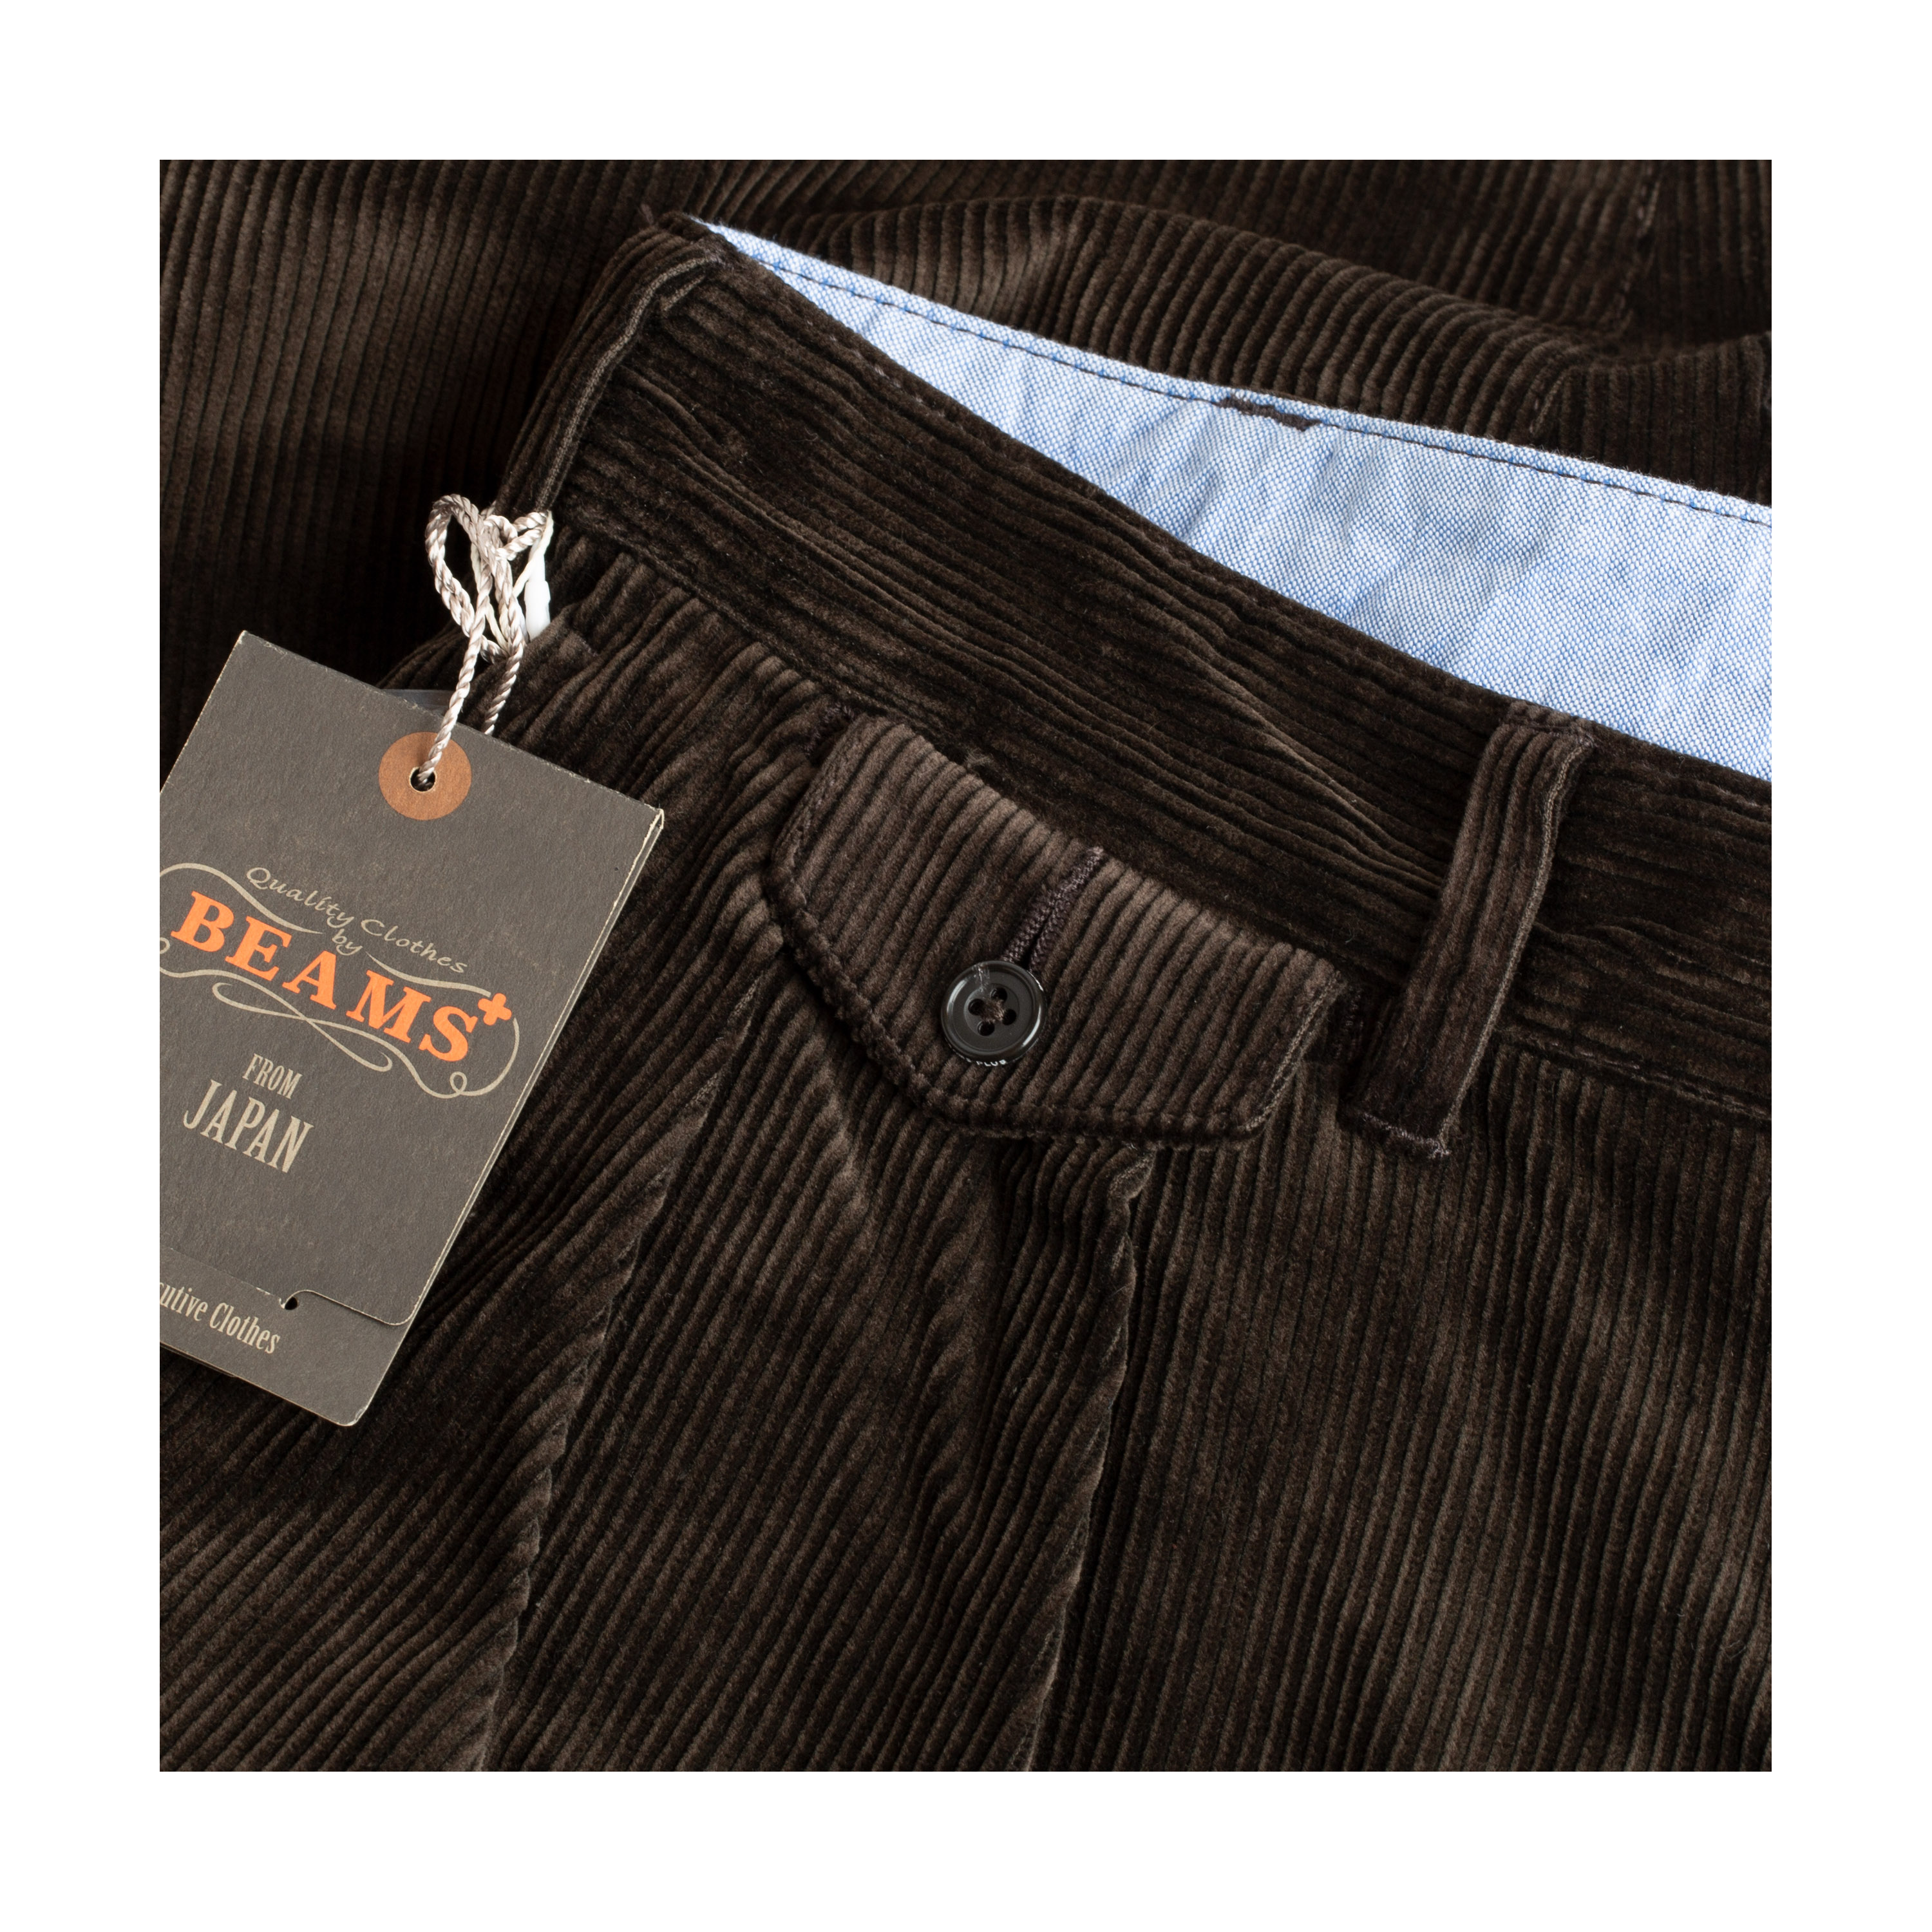 BEAMS PLUS / 2 Pleats Corduroy Trousers Dark Brown